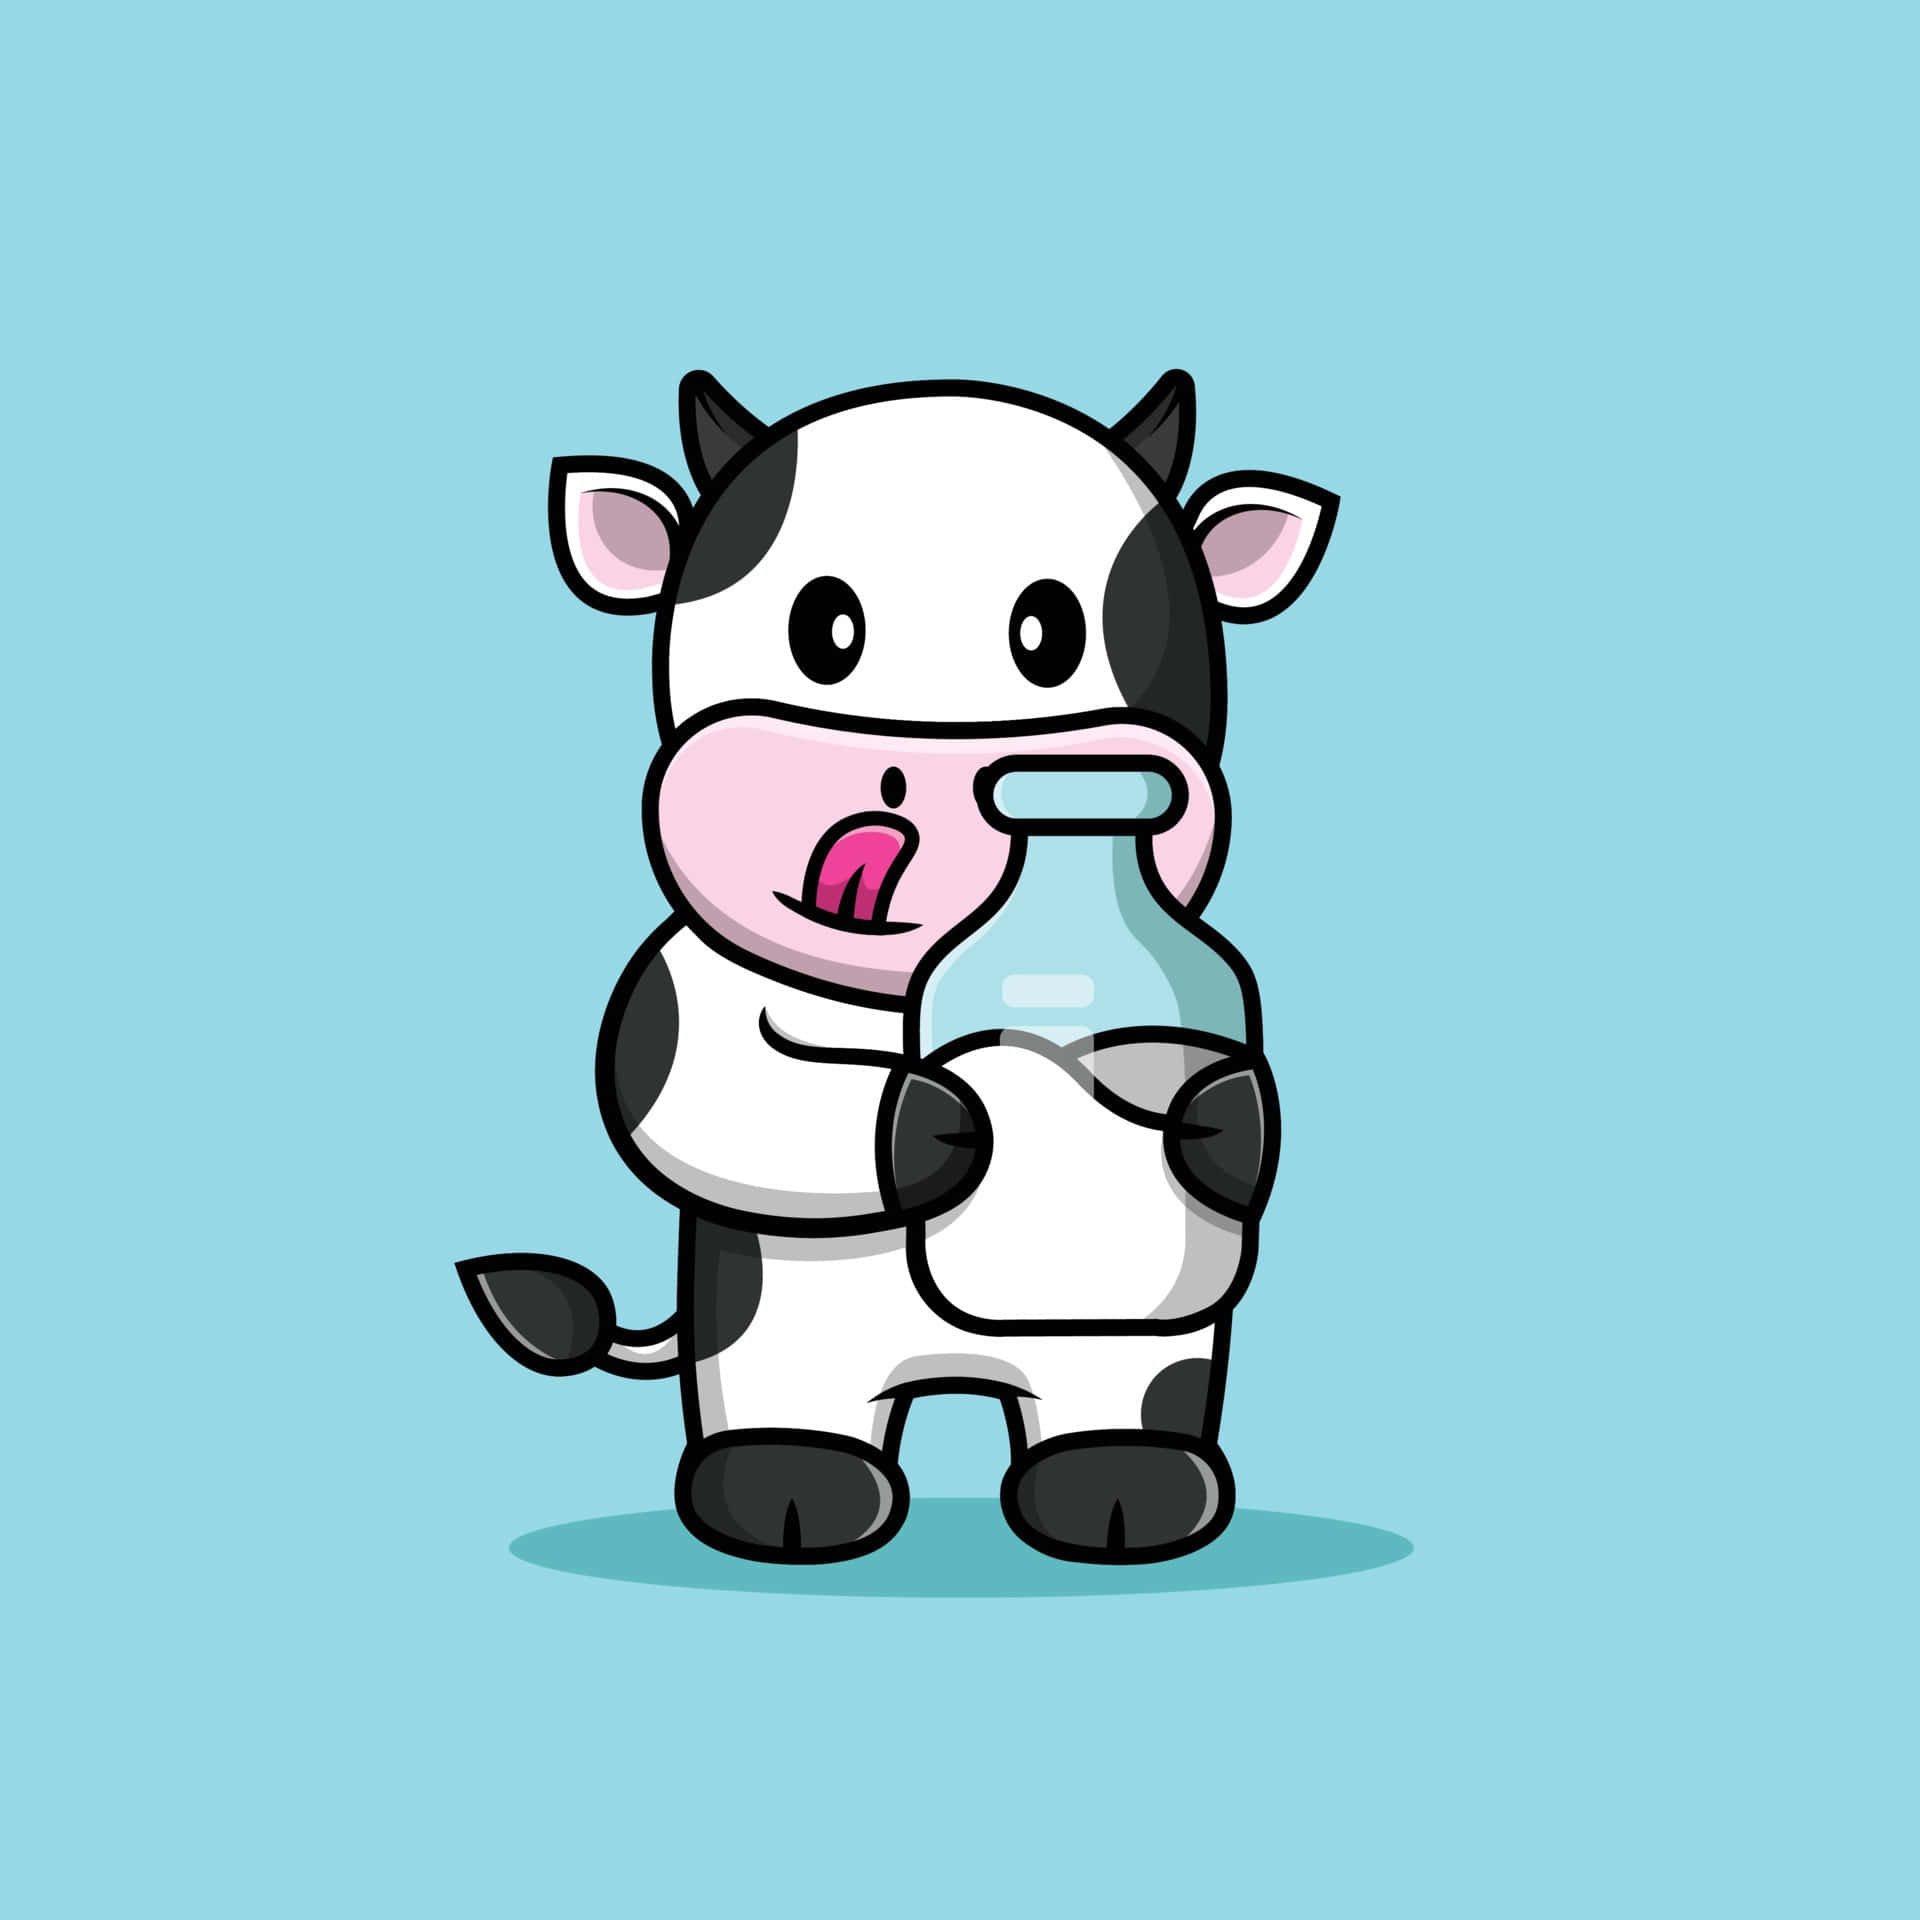 En tegnet ko, der holder en flaske mælk